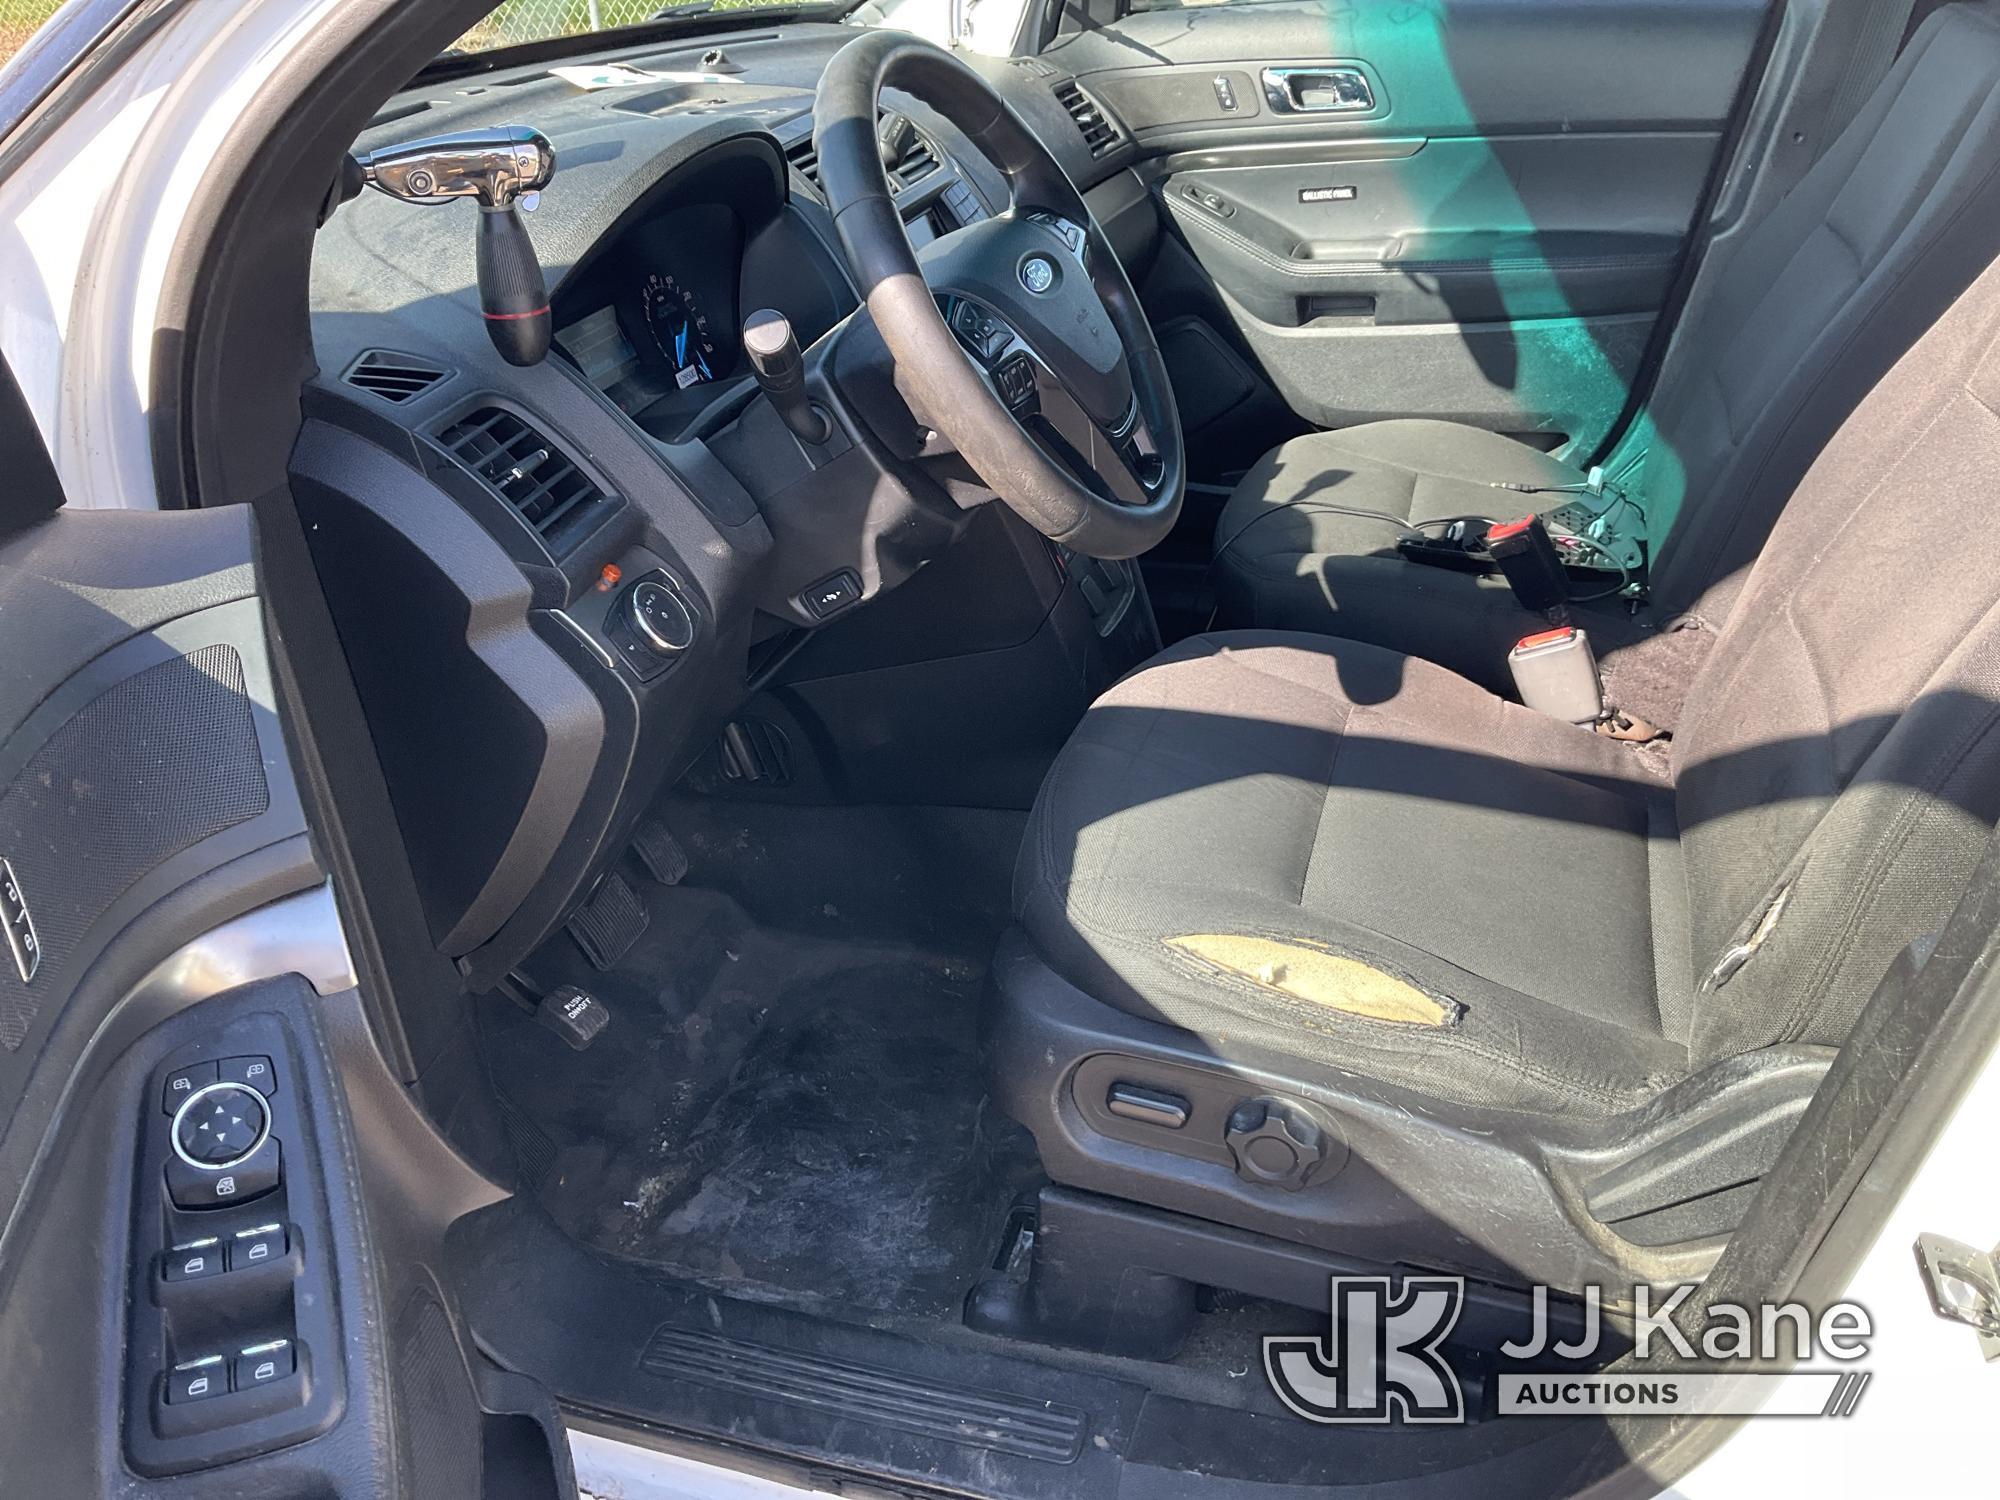 (Dixon, CA) 2016 Ford Explorer 4x4 4-Door Sport Utility Vehicle Runs & Moves. Missing Backseats.  En